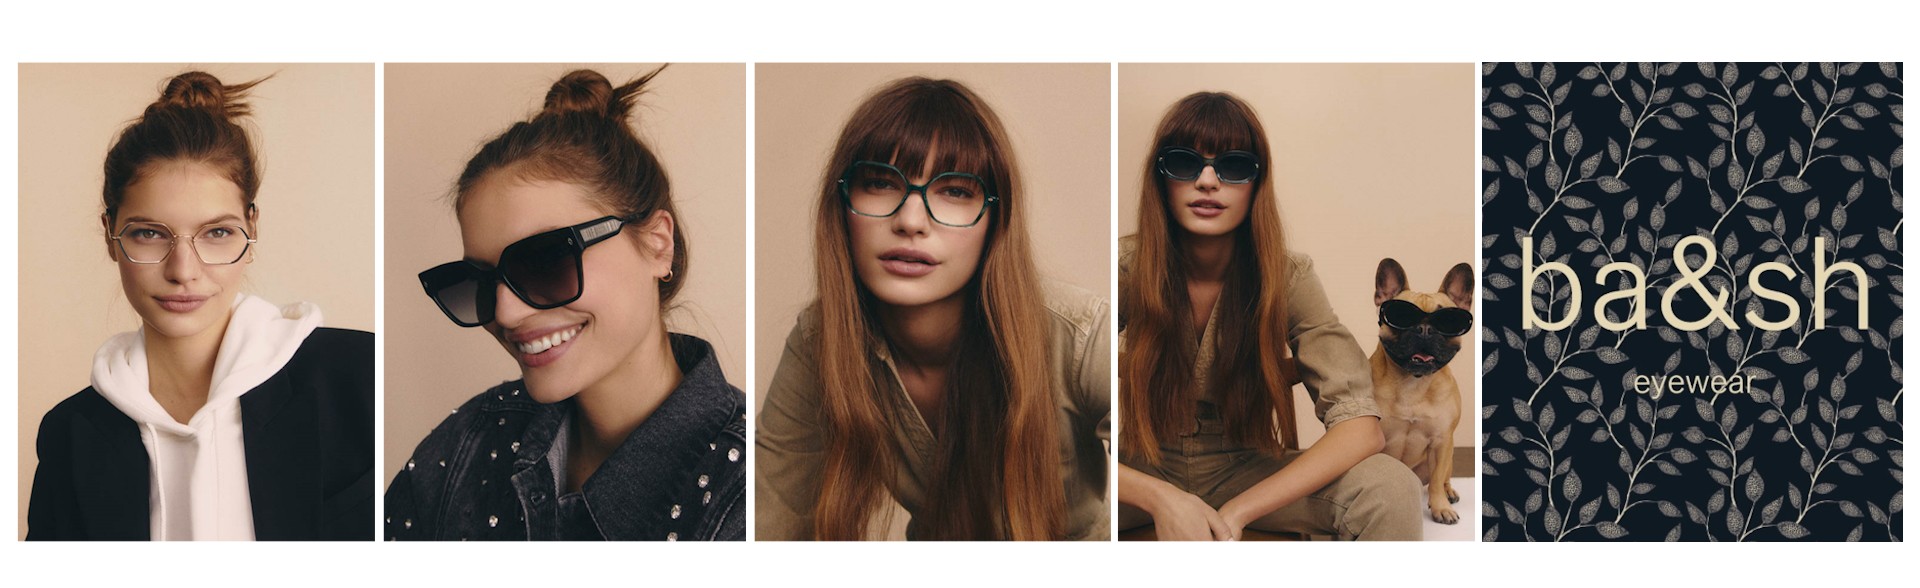 Ba&sh eyewear, collection féminine de lunettes optiques et solaires, au coeur de la presqu'ile et du centre de Lyon.  Venez les découvrir chez optique Terreaux.